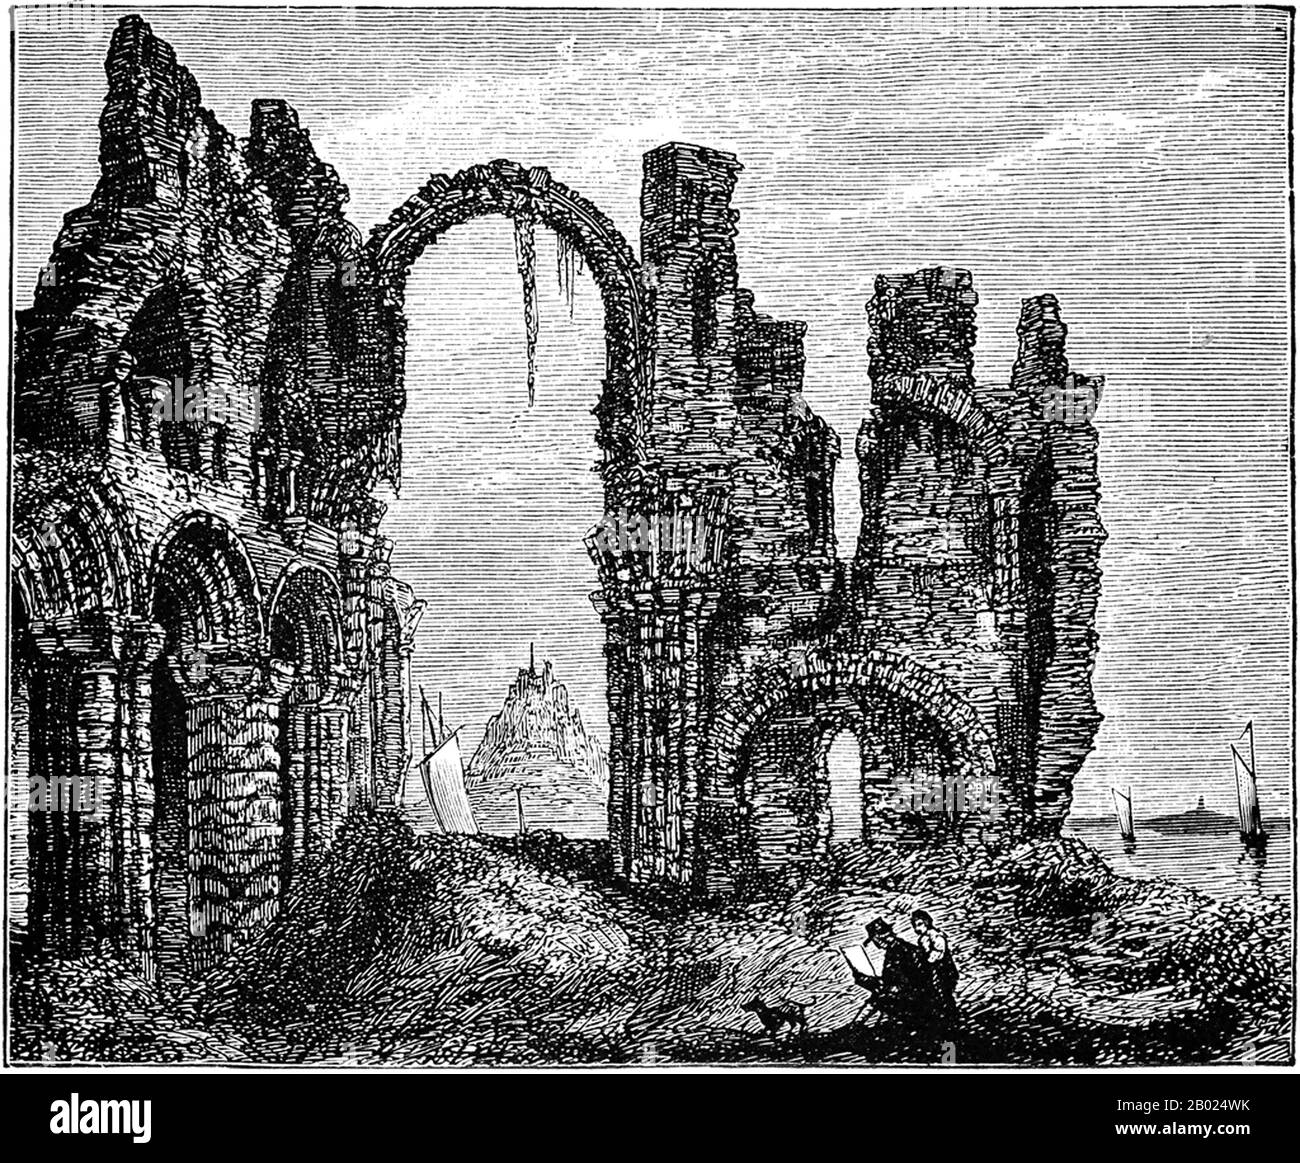 Das Kloster Lindisfarne wurde von dem irischen Mönch Saint Aidan gegründet, der von Iona vor der Westküste Schottlands nach Northumbria auf bitten von König Oswald c.635 CE geschickt worden war. Sie wurde zur Basis für die christliche Evangelisierung im Norden Englands und schickte auch eine erfolgreiche Mission nach Mercia. Auf der Insel ließen sich auch die Mönche aus der Gemeinde Iona nieder. Northumberlands Schutzpatron, der heilige Cuthbert, war Mönch und später Abt des Klosters, und seine Wunder und sein Leben werden von der Venerable Bede aufgezeichnet. Cuthbert wurde später Bischof von Lindisfarne. Er wurde hier begraben, seine Überreste später übersetzen Stockfoto